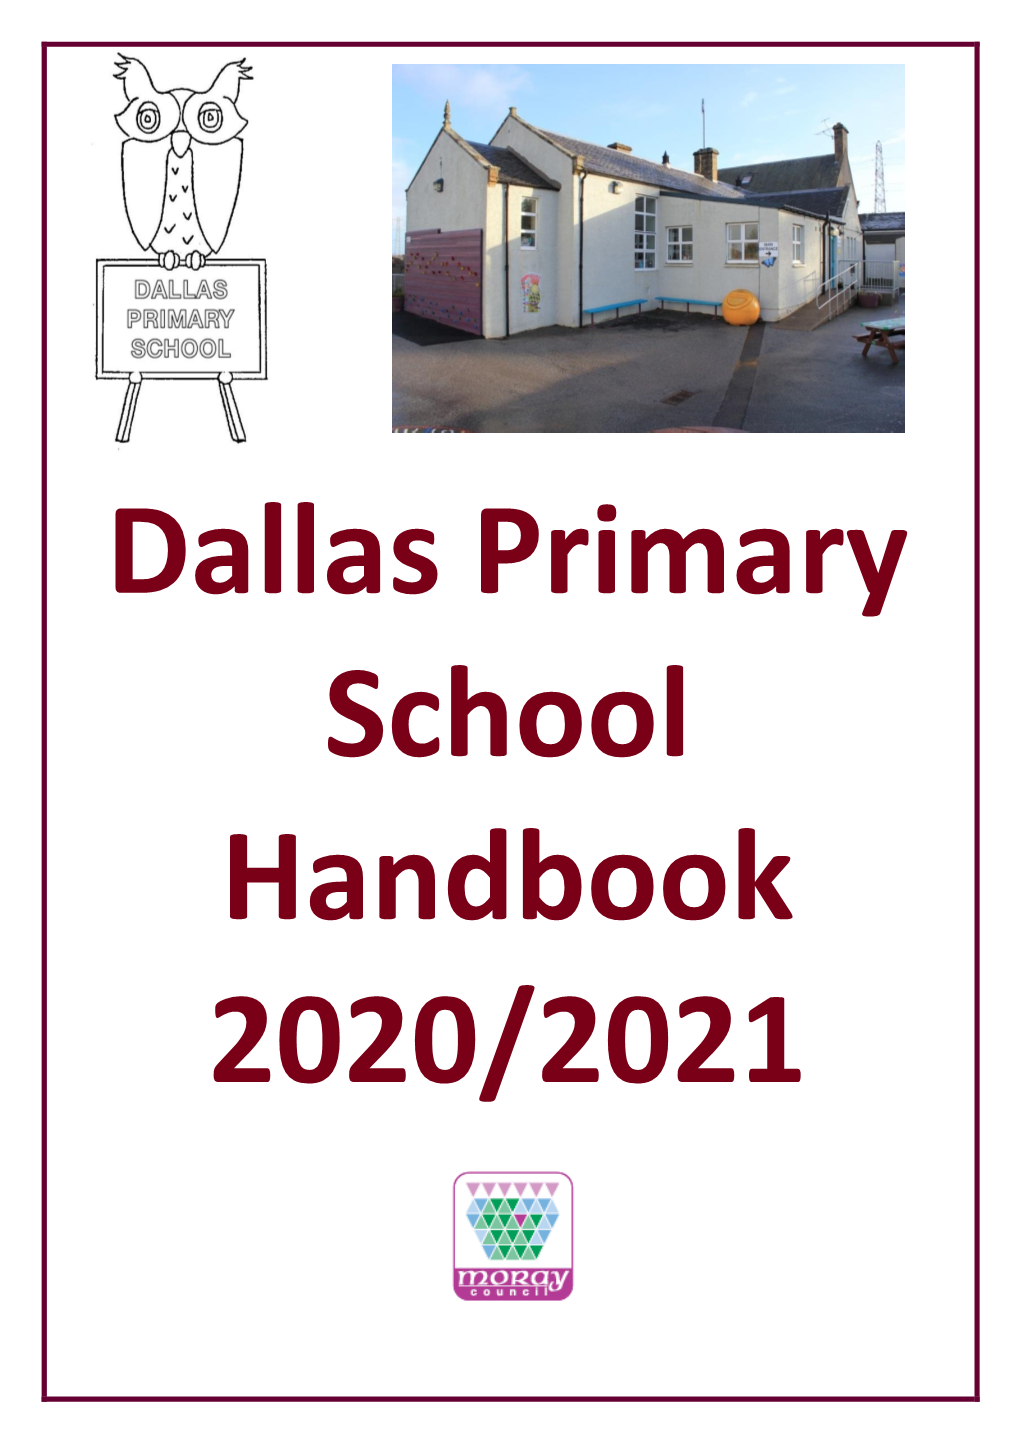 Dallas Primary School Handbook 2020/2021